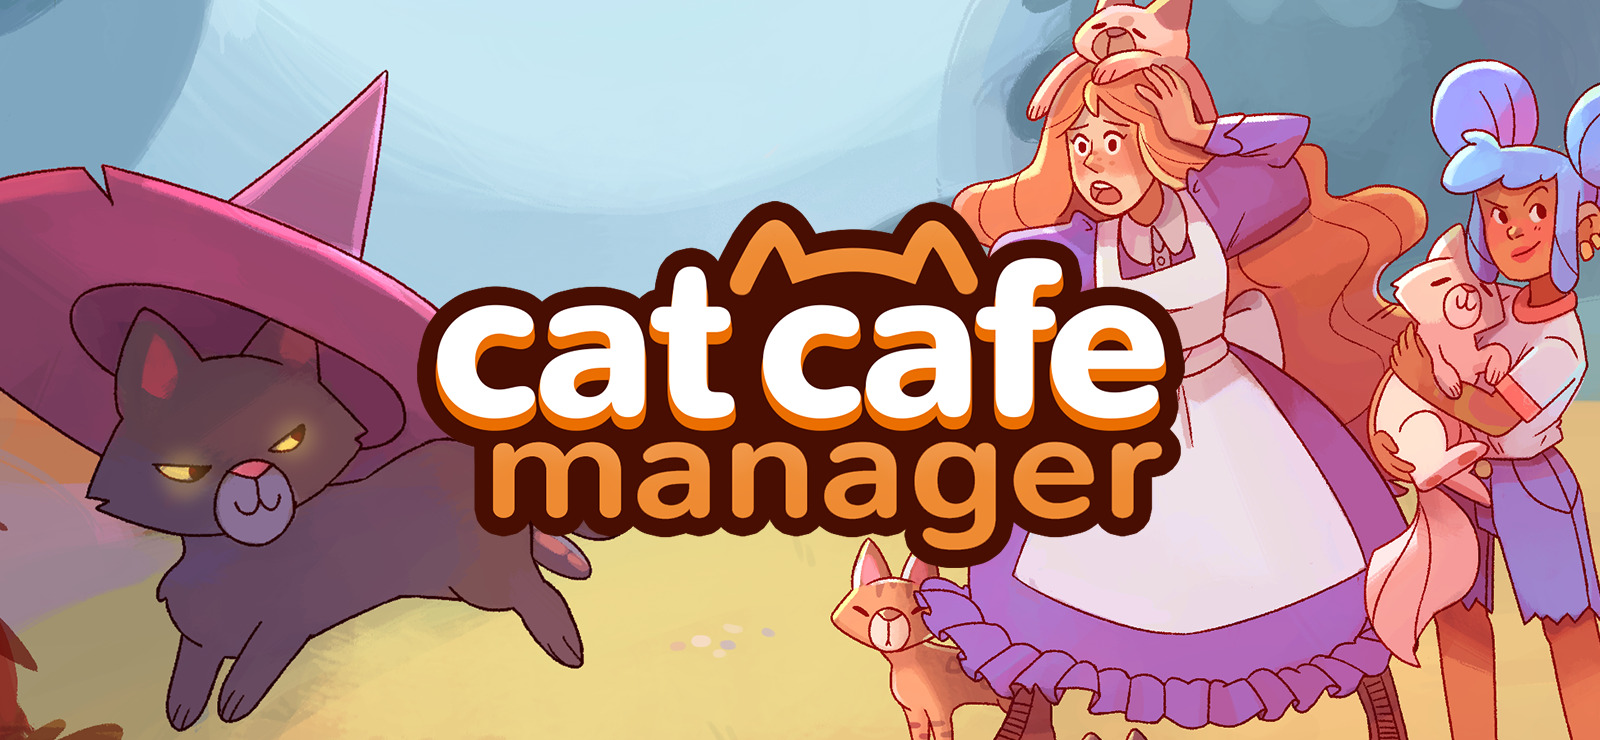 Furistas Cat Cafe – Apps no Google Play